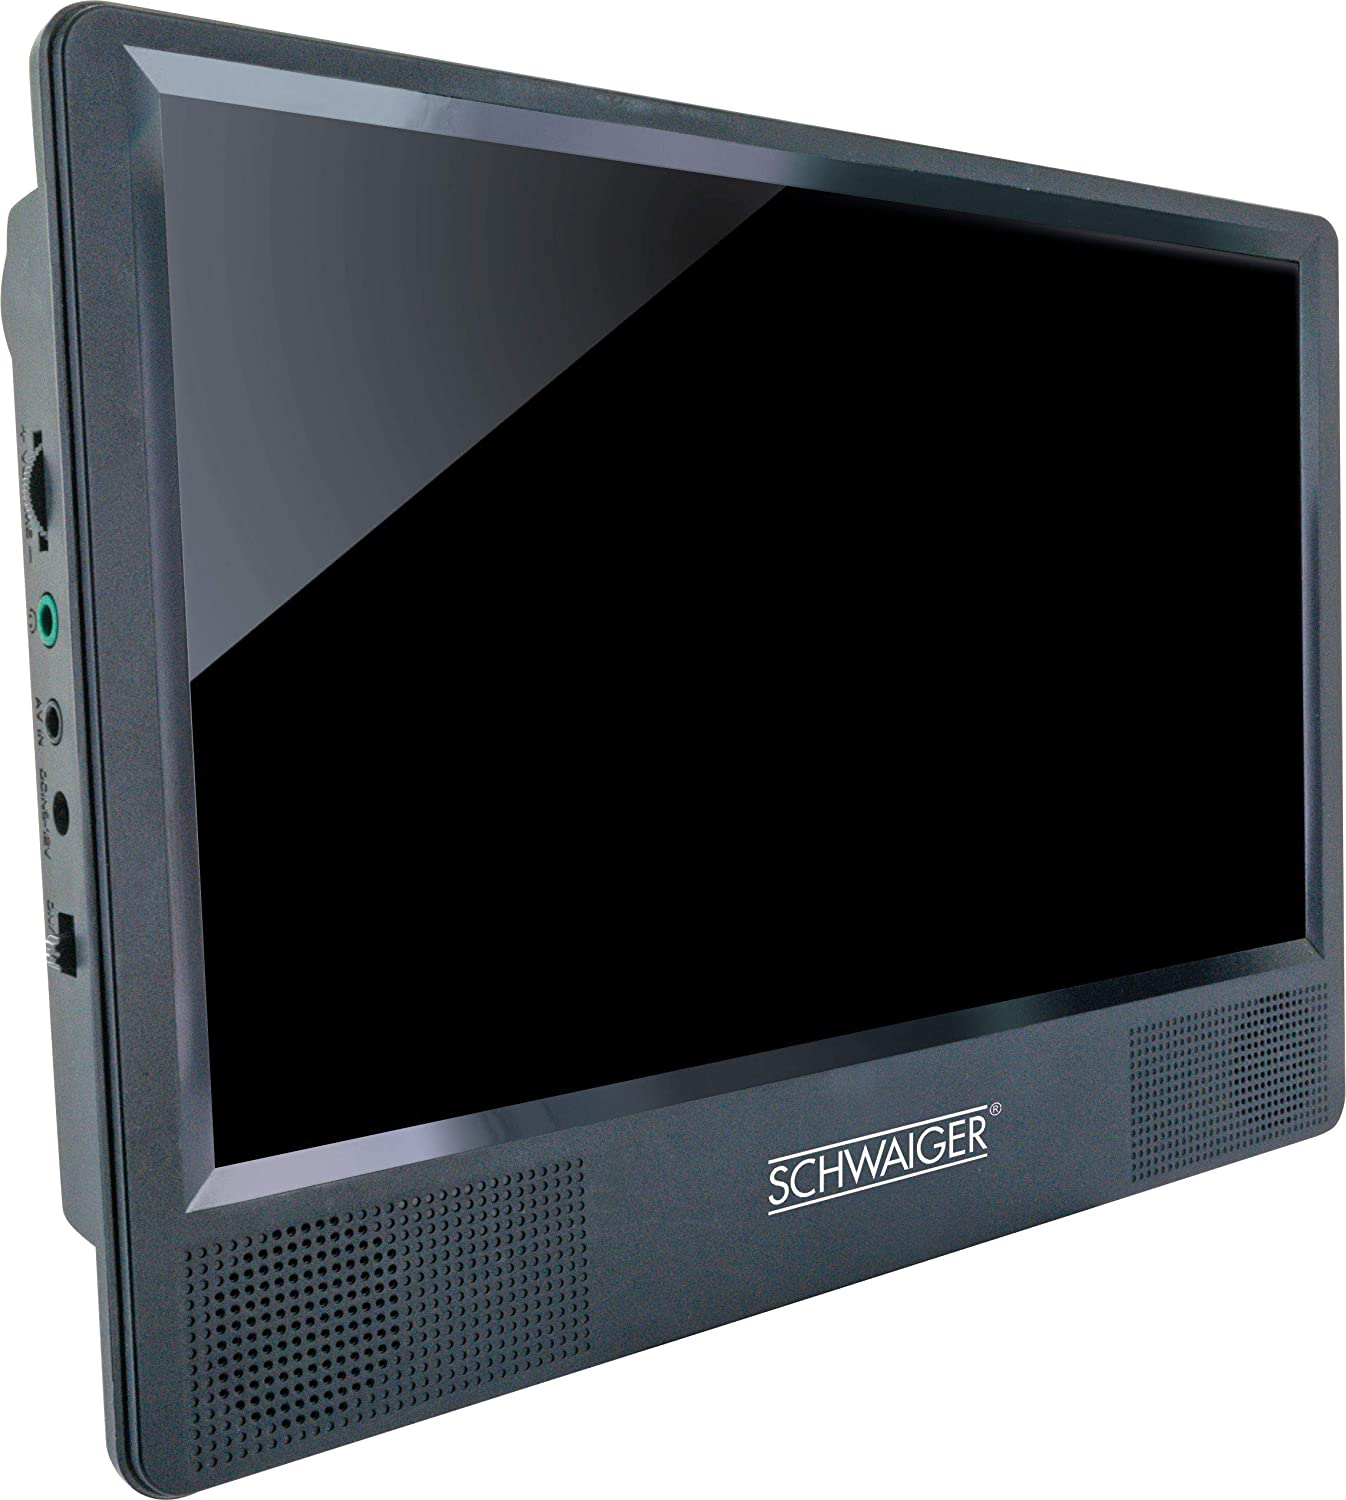 SCHWAIGER -716474- DVD schwarz Fernbedienung Monitor Set mit